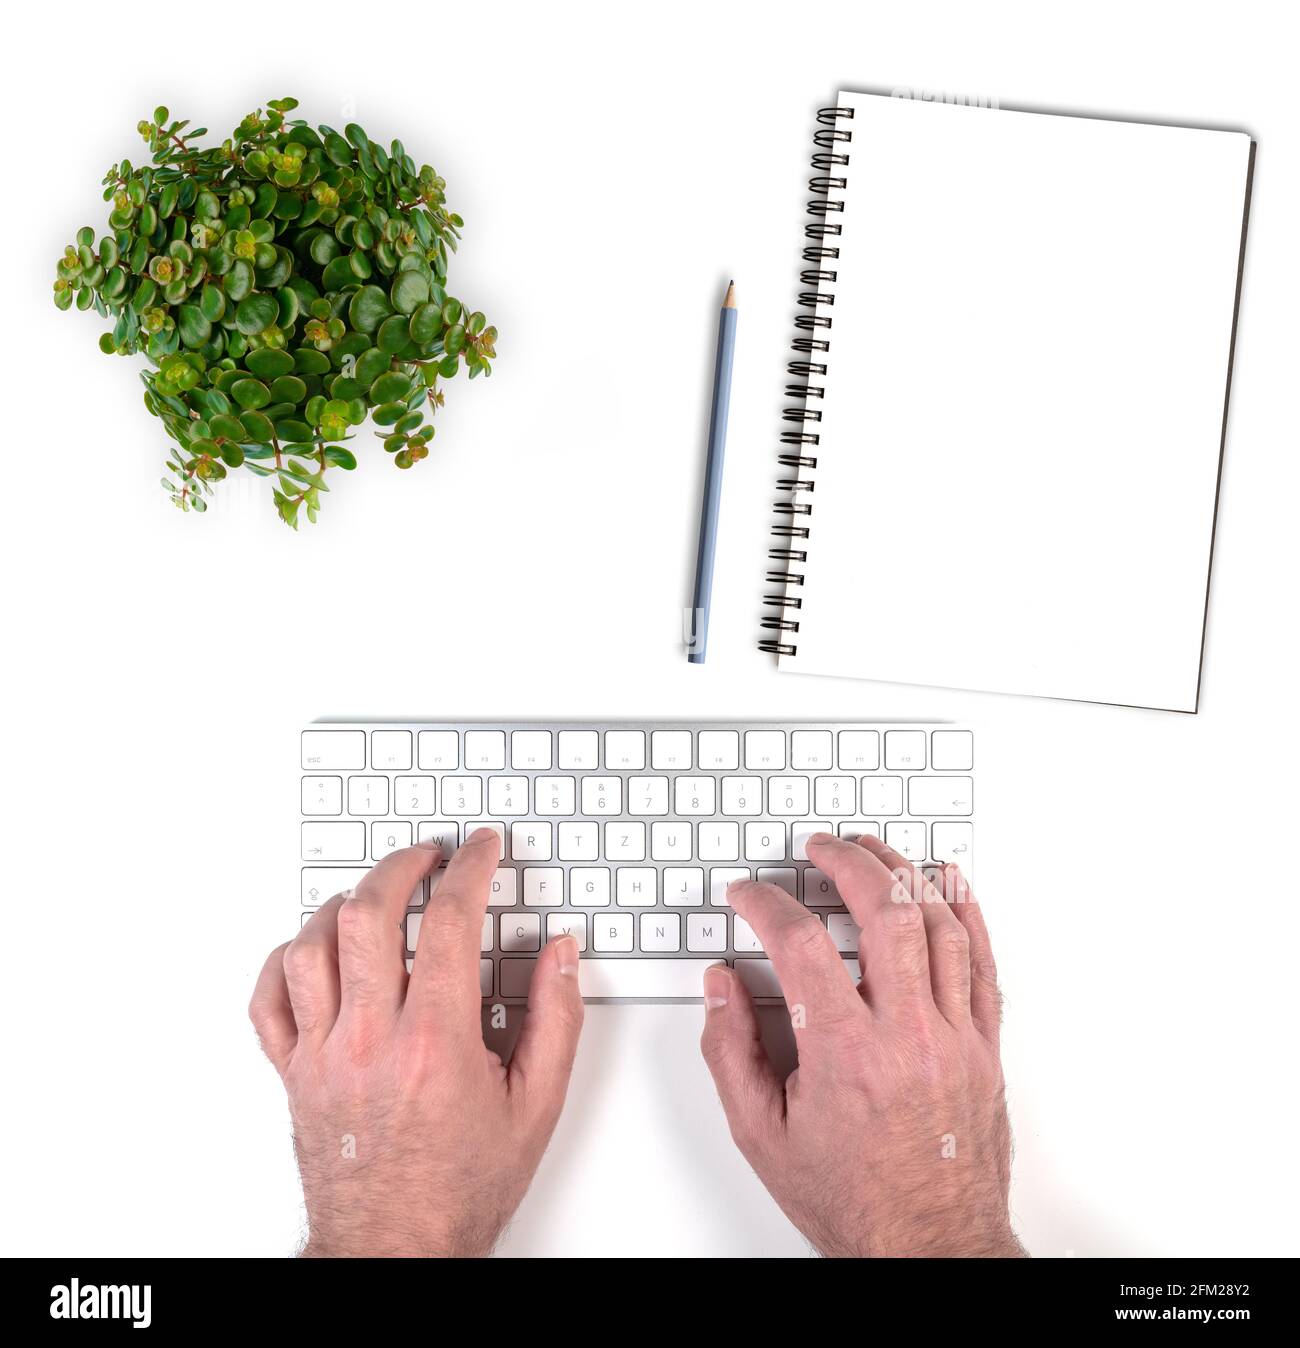 Draufsicht der Person, die auf der kabellosen Computertastatur auf tippt Weißer Schreibtisch mit Topfpflanze und Notizblock mit Bleistift Stockfoto